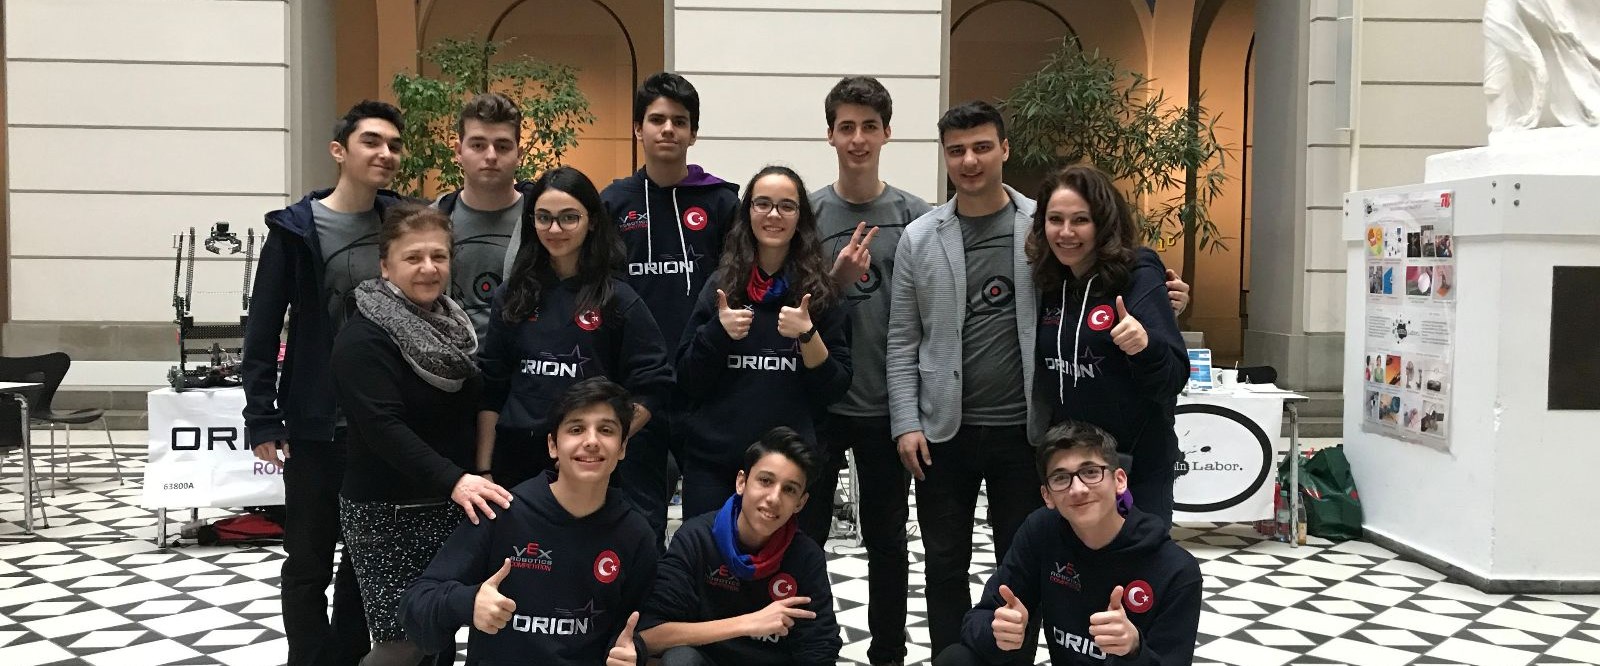 Liseli Türk öğrenciler Almanya’dan şampiyonlukla döndü